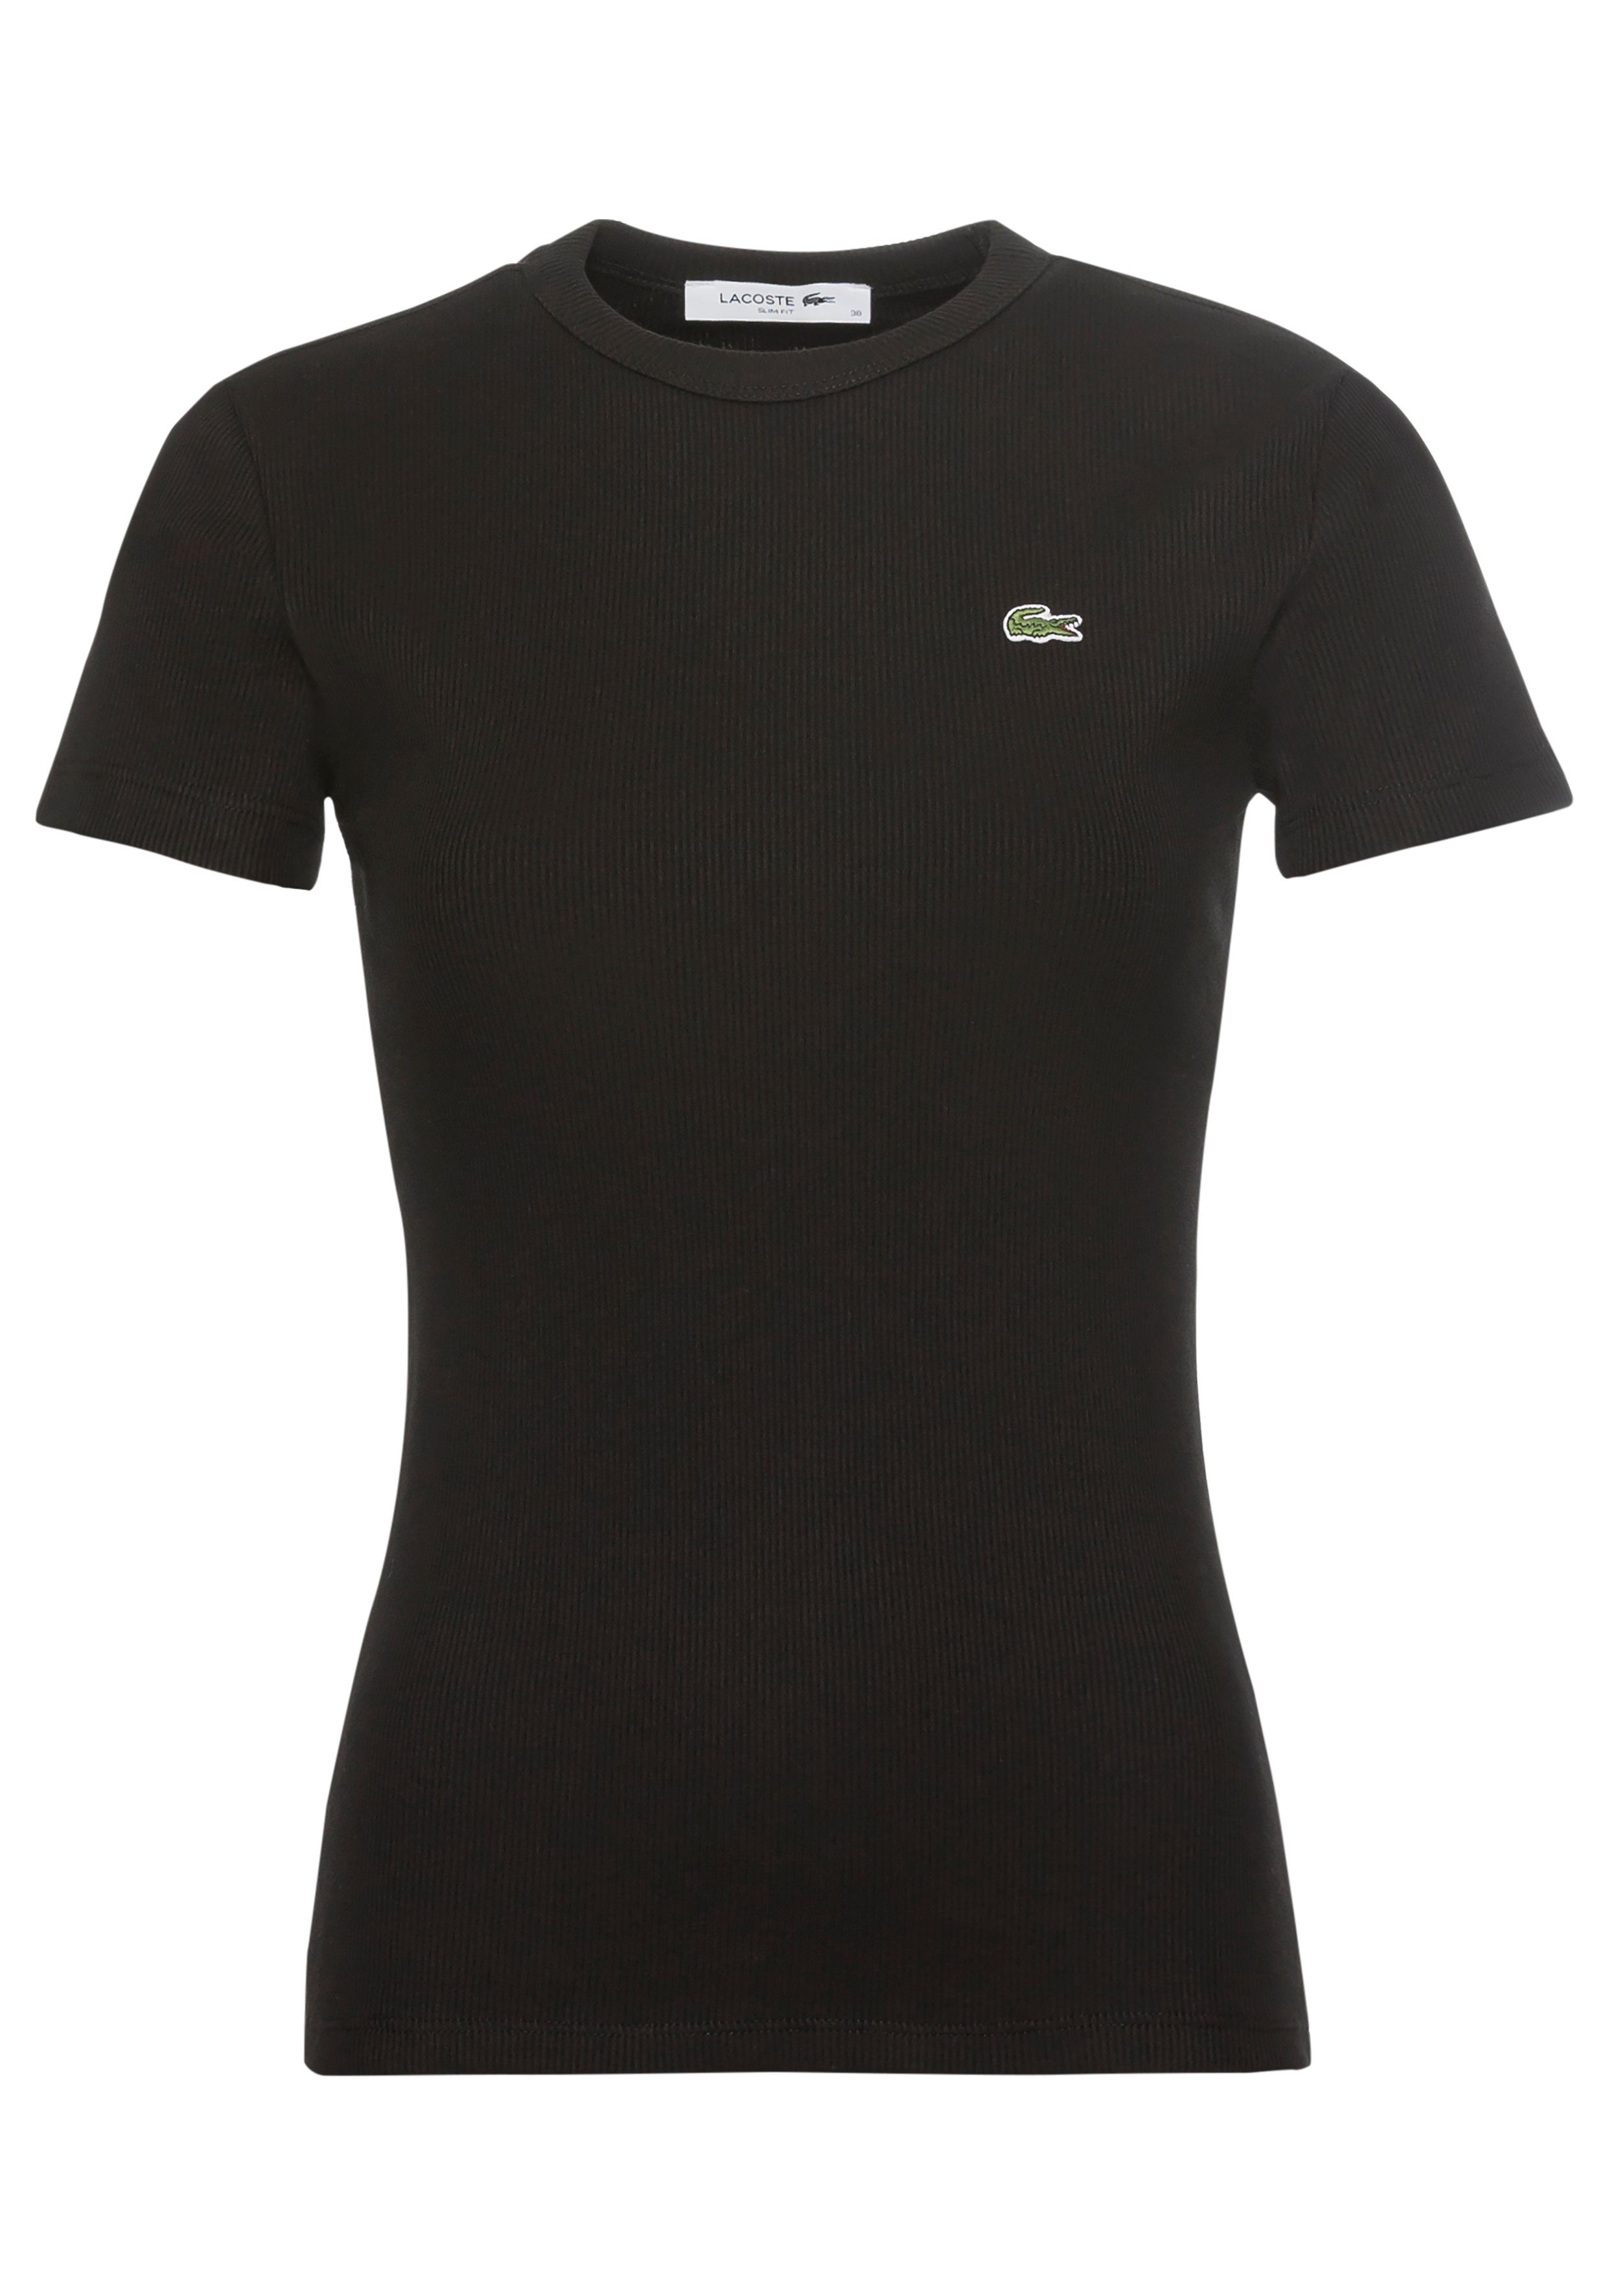 Shirt Fit Lacoste T-Shirt Bio-Baumwolle schwarz Slim aus